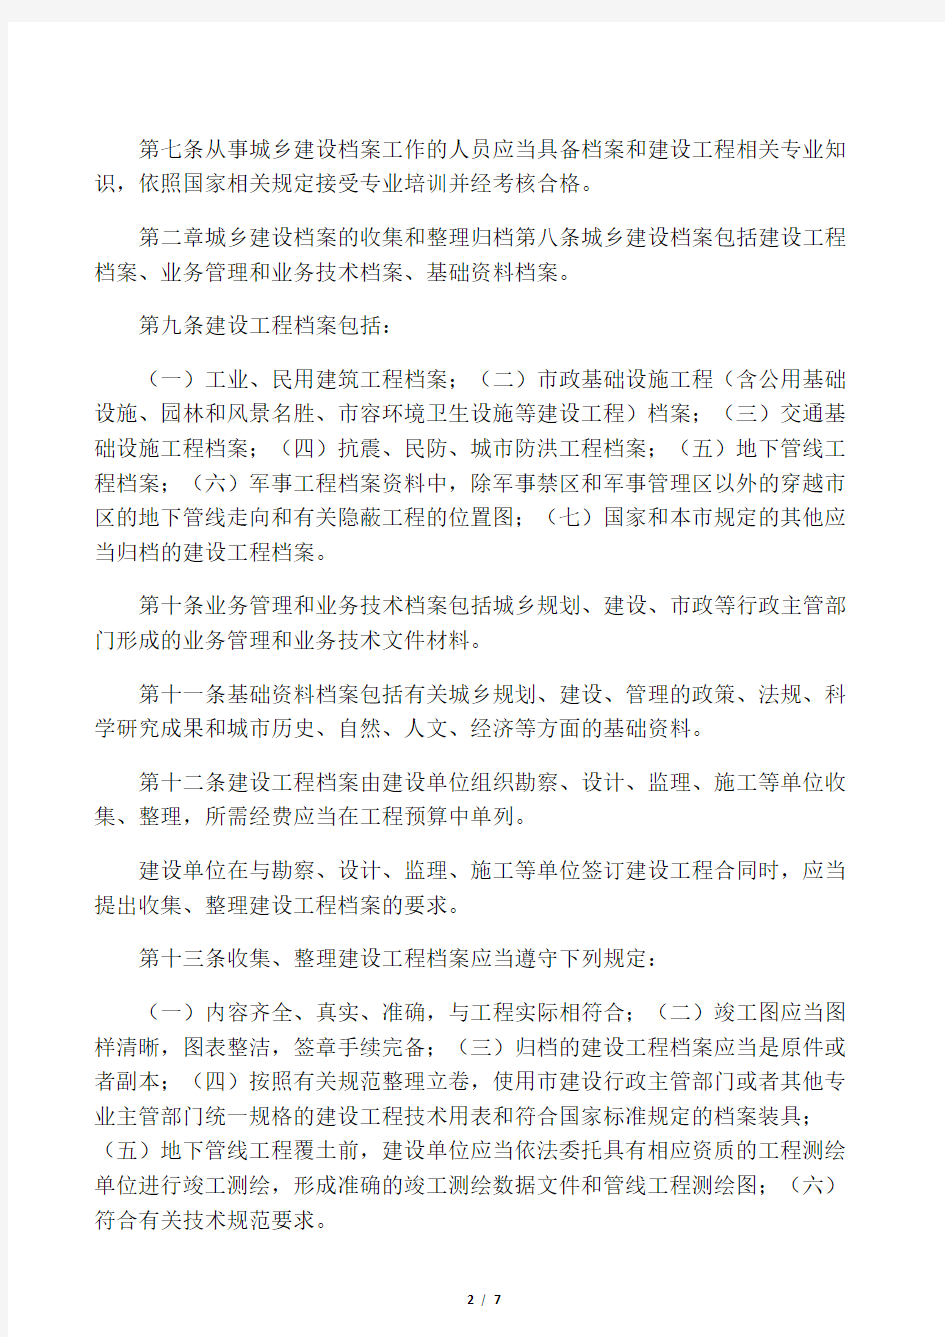 《重庆市城乡建设档案管理办法》(渝府令第 240 号 2010)